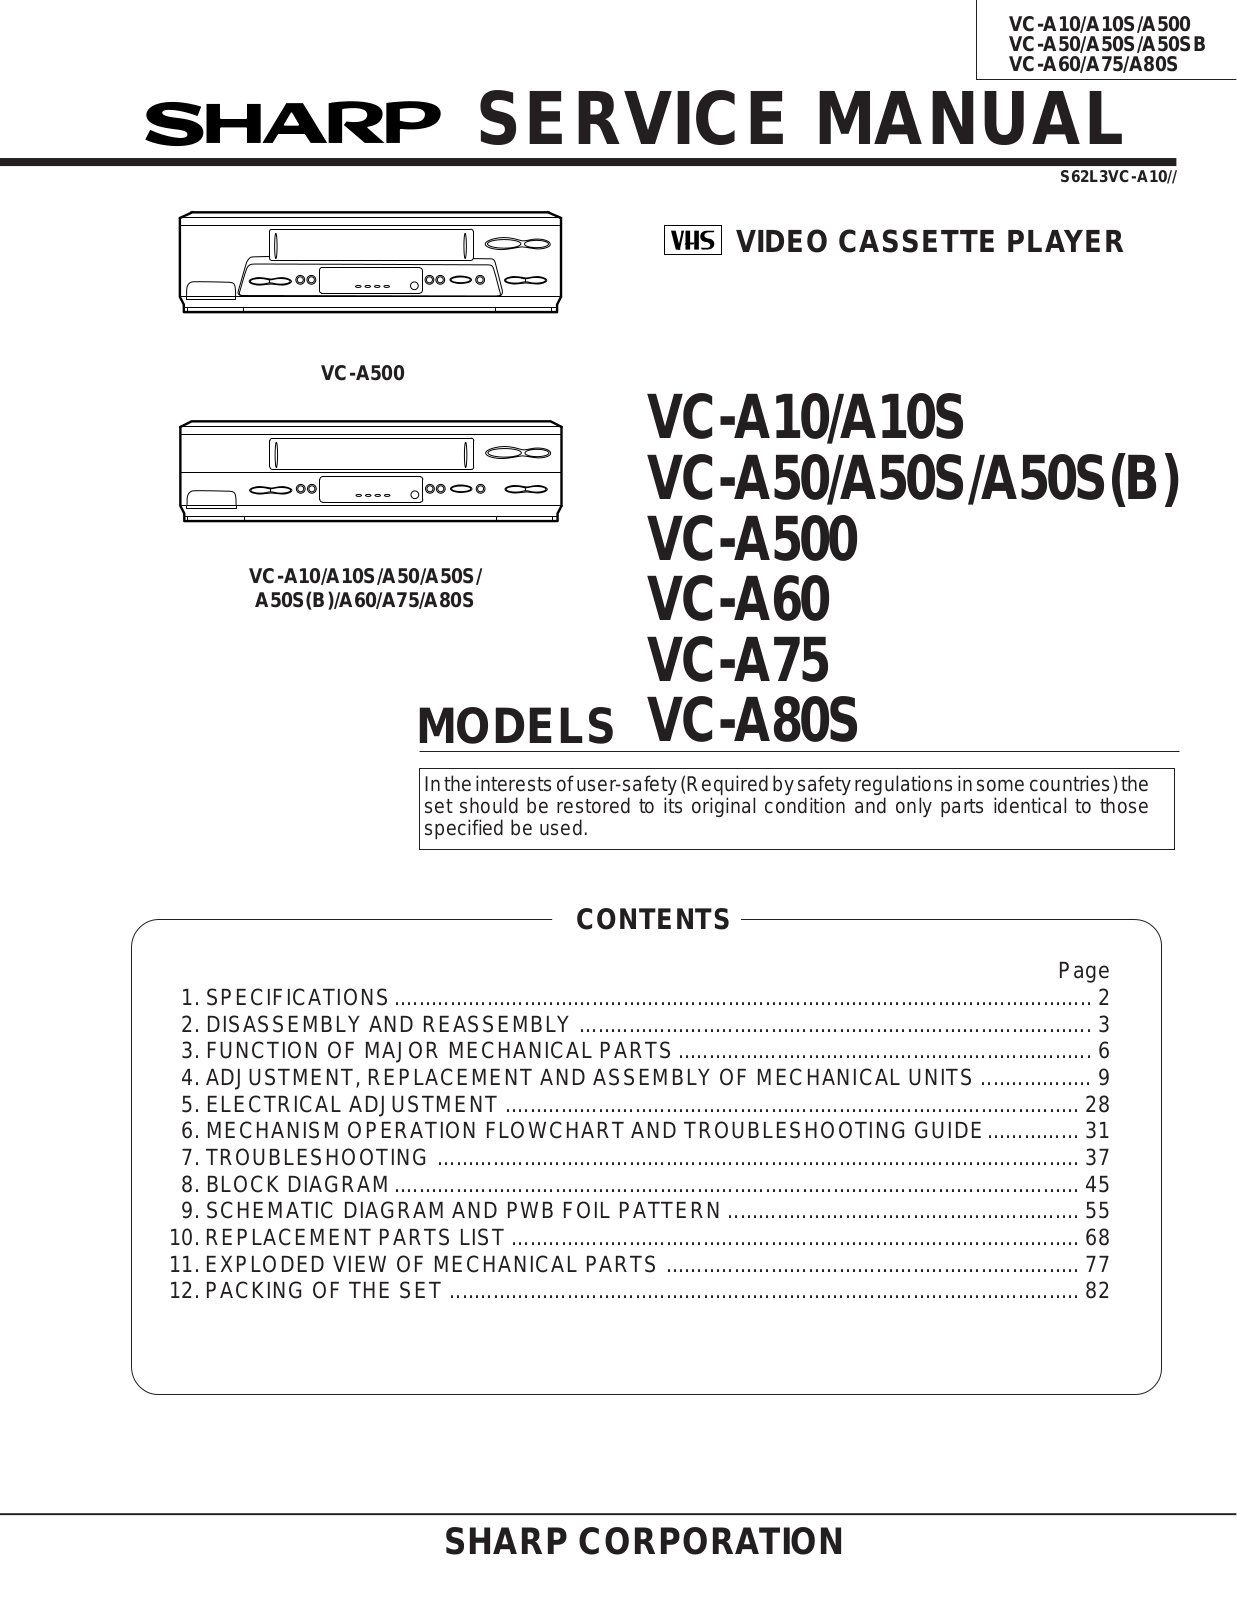 Sharp VC-A10, VC-A10S, VC-A50, VC-A50S, VC-A500 Service manual